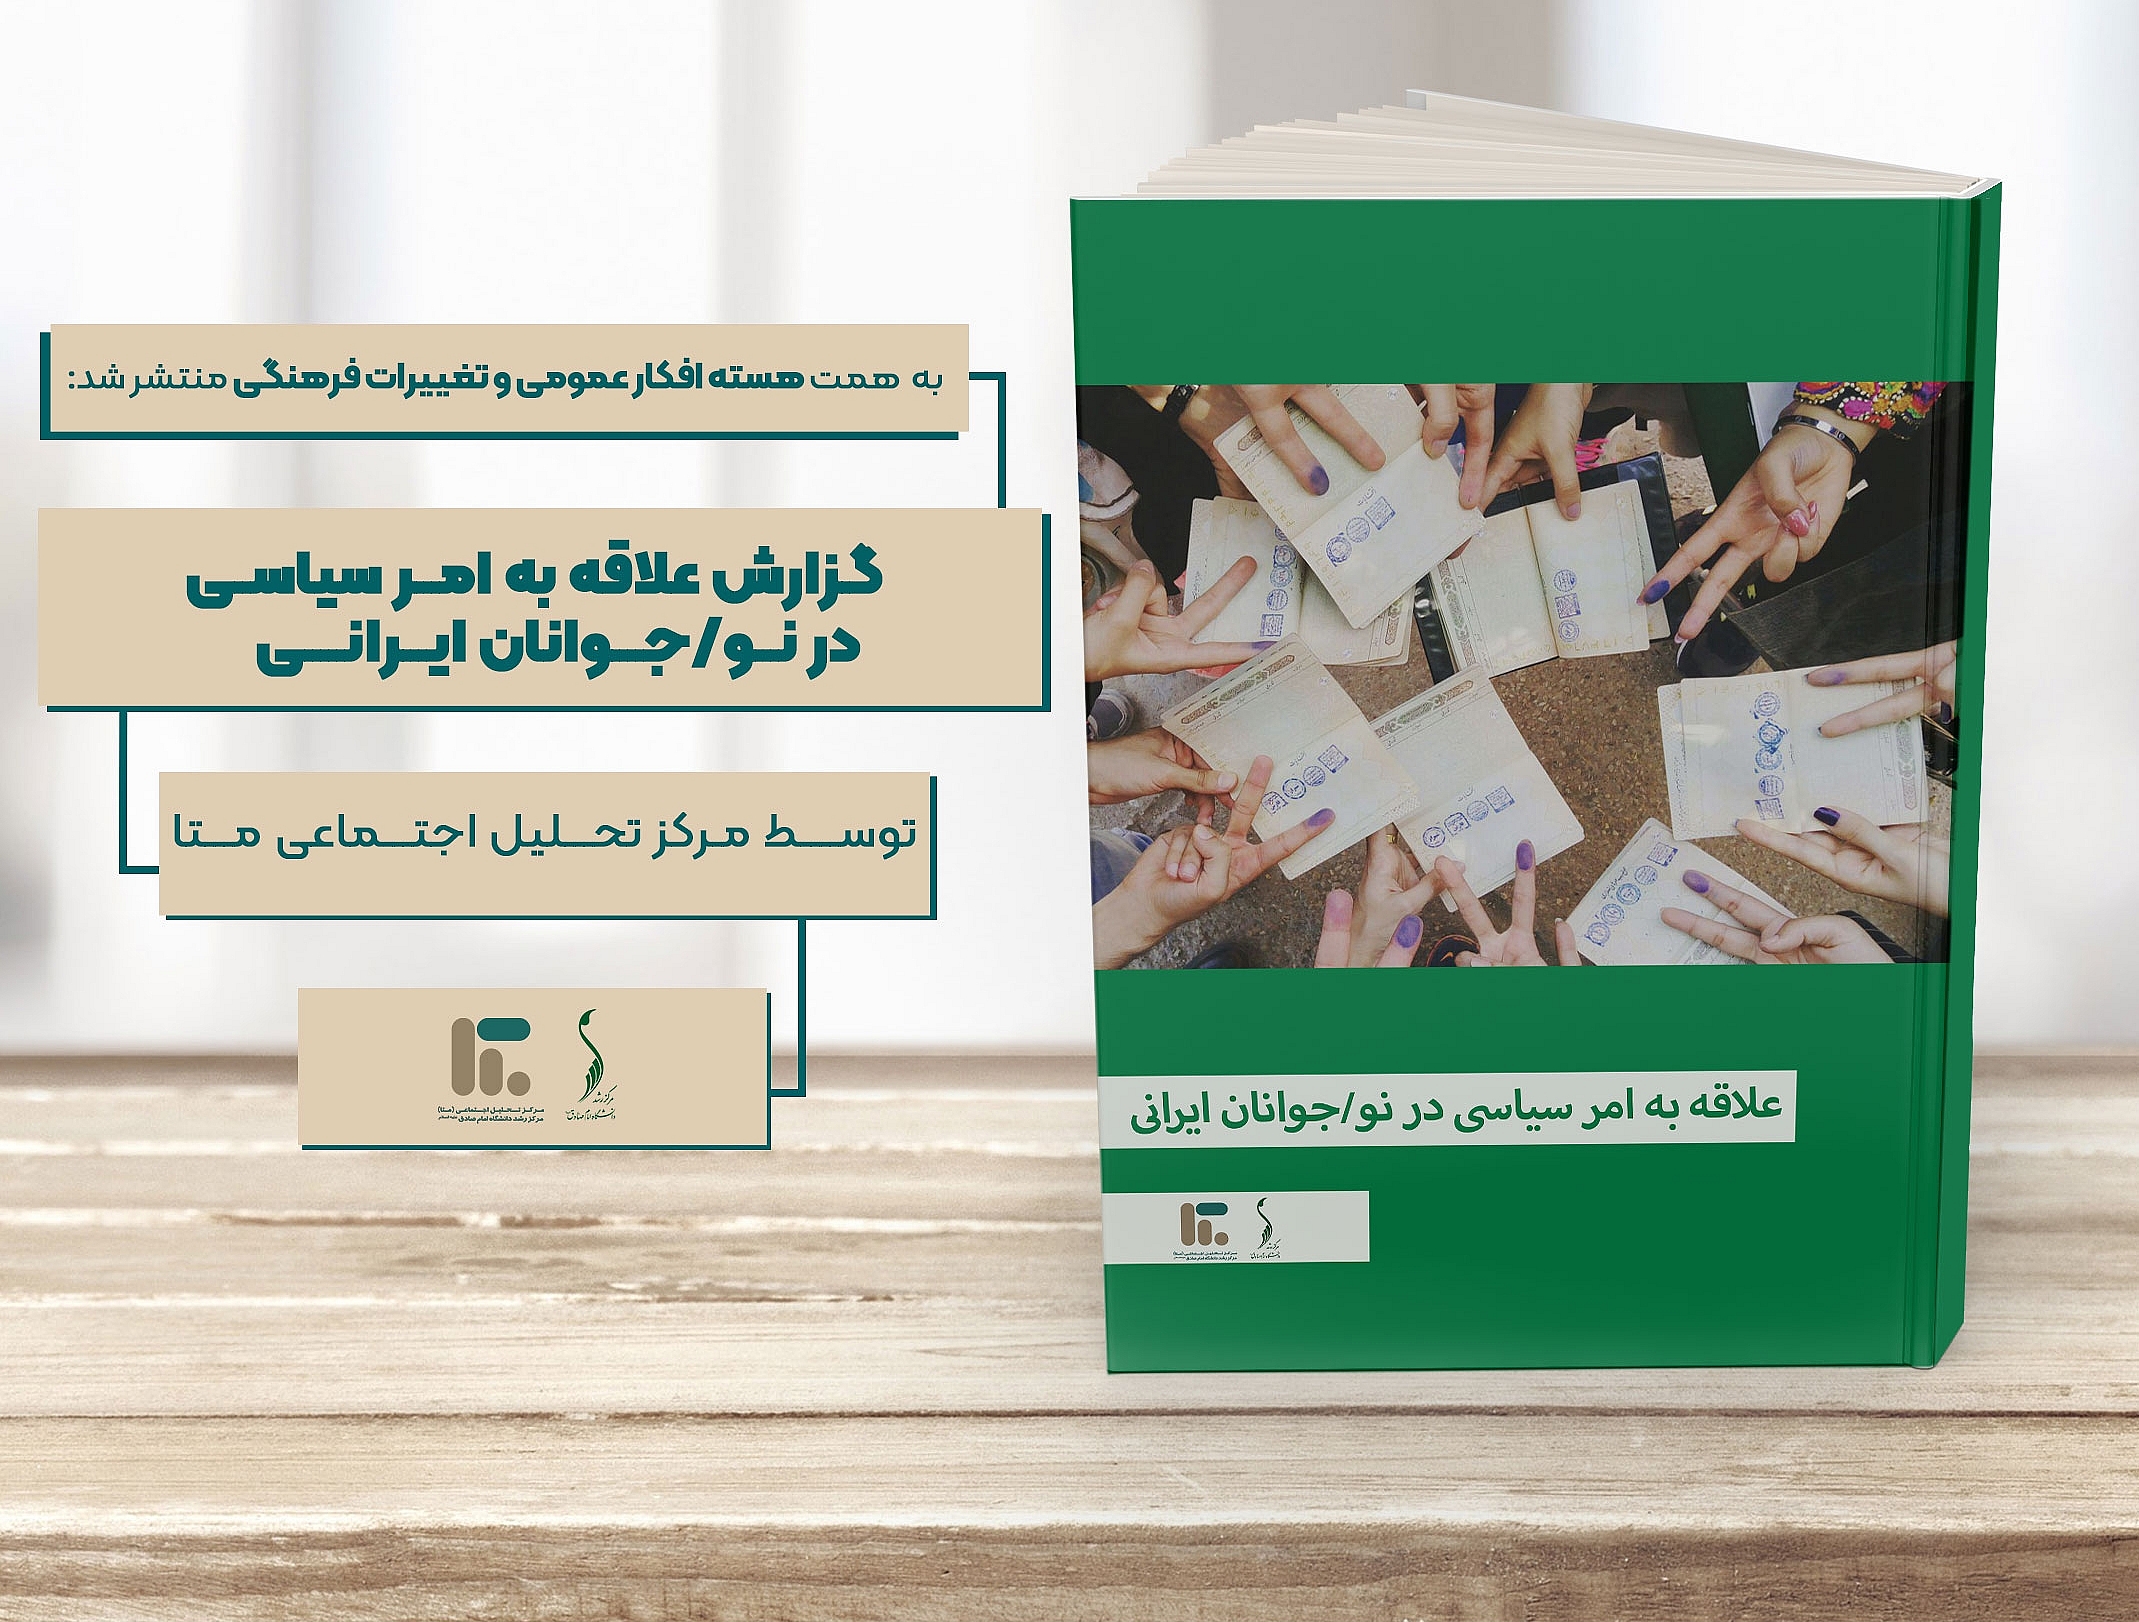 گزارش علاقه به امر سیاسی در نو/جوانان ایرانی؛ توسط مرکز تحلیل اجتماعی «متا»